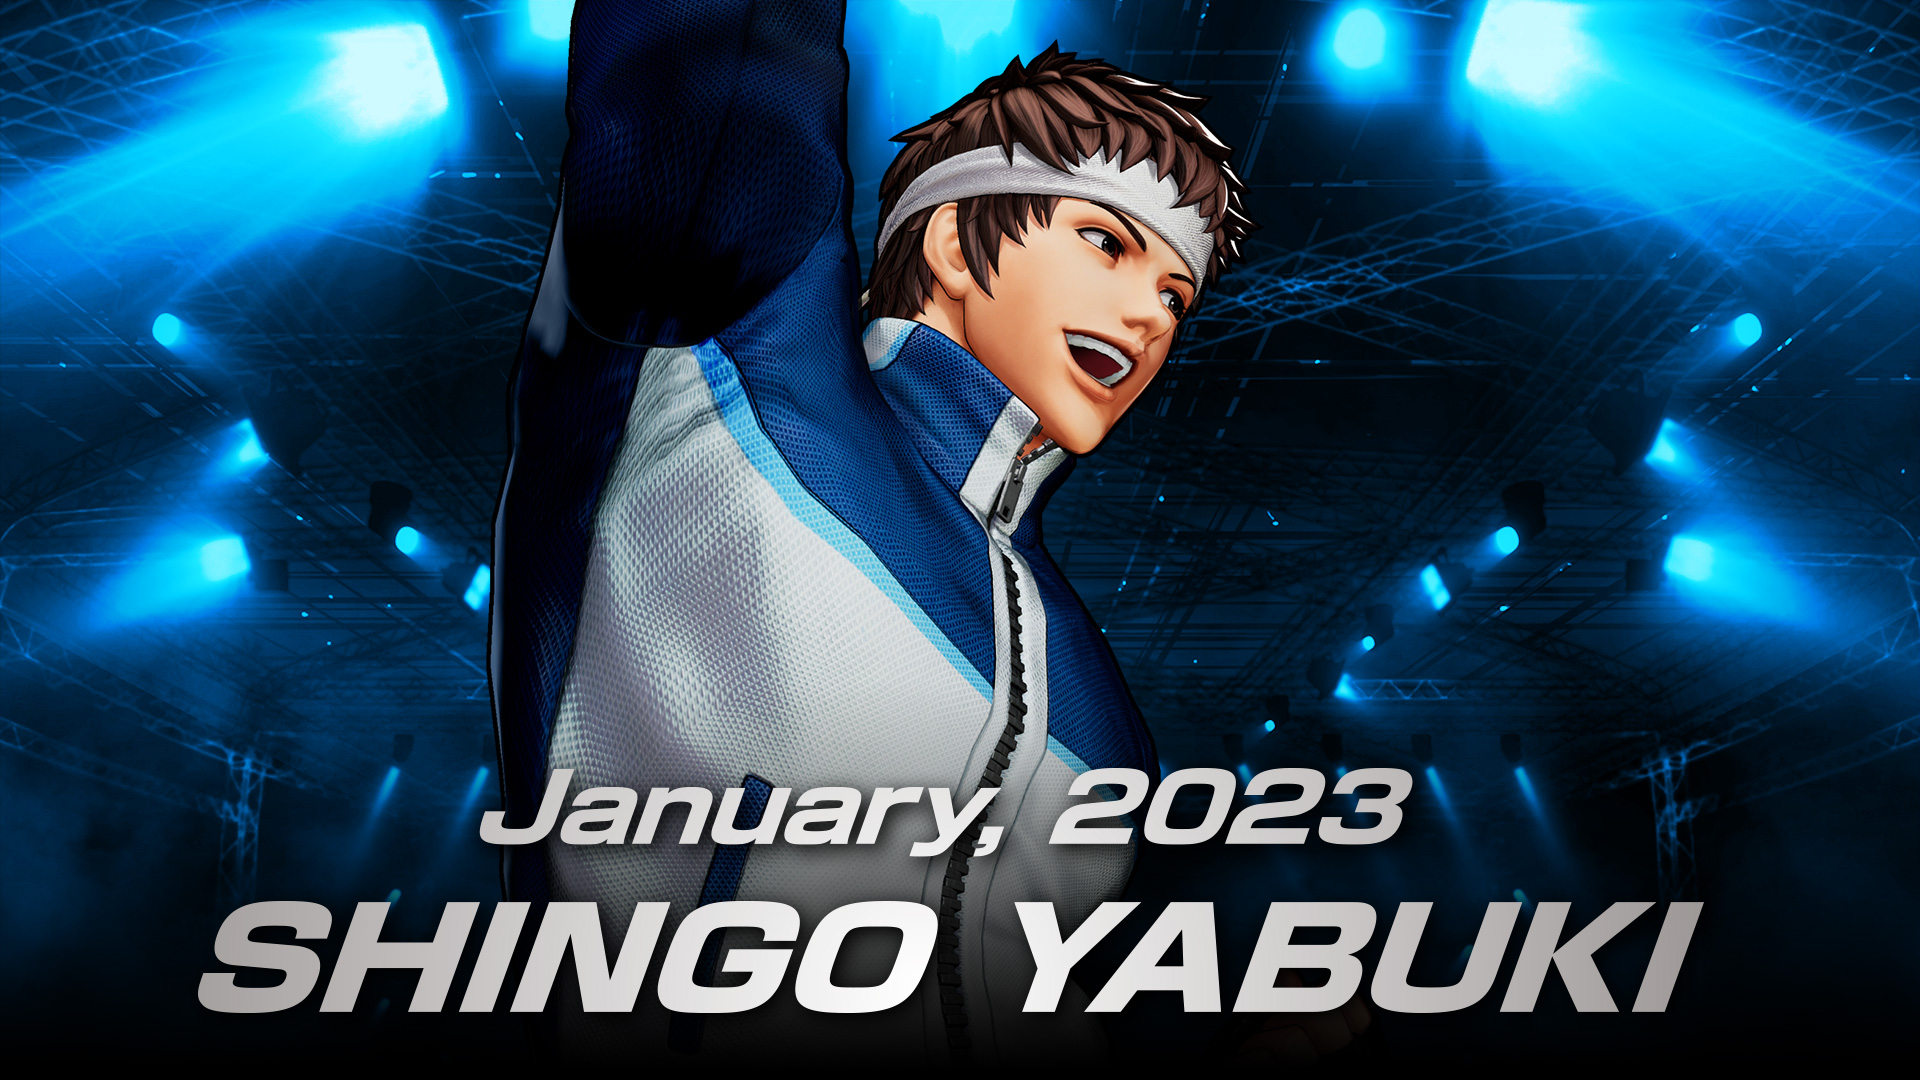 King of Fighters XV Shingo Yabuki